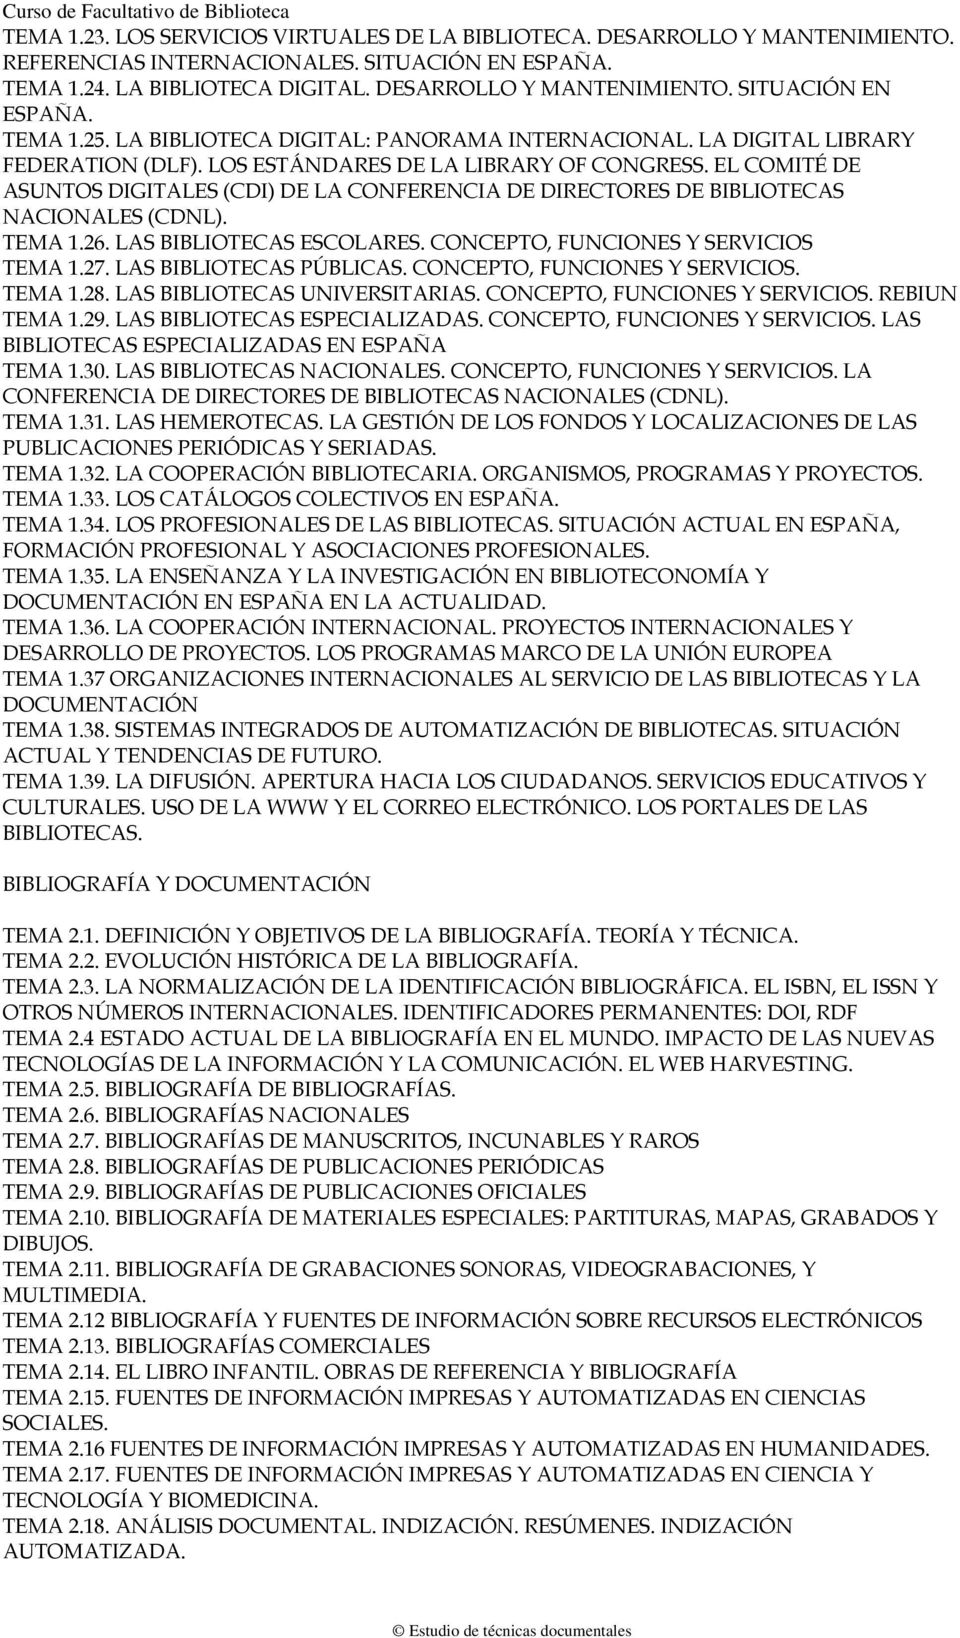 EL COMITÉ DE ASUNTOS DIGITALES (CDI) DE LA CONFERENCIA DE DIRECTORES DE BIBLIOTECAS NACIONALES (CDNL). TEMA 1.26. LAS BIBLIOTECAS ESCOLARES. CONCEPTO, FUNCIONES Y SERVICIOS TEMA 1.27.